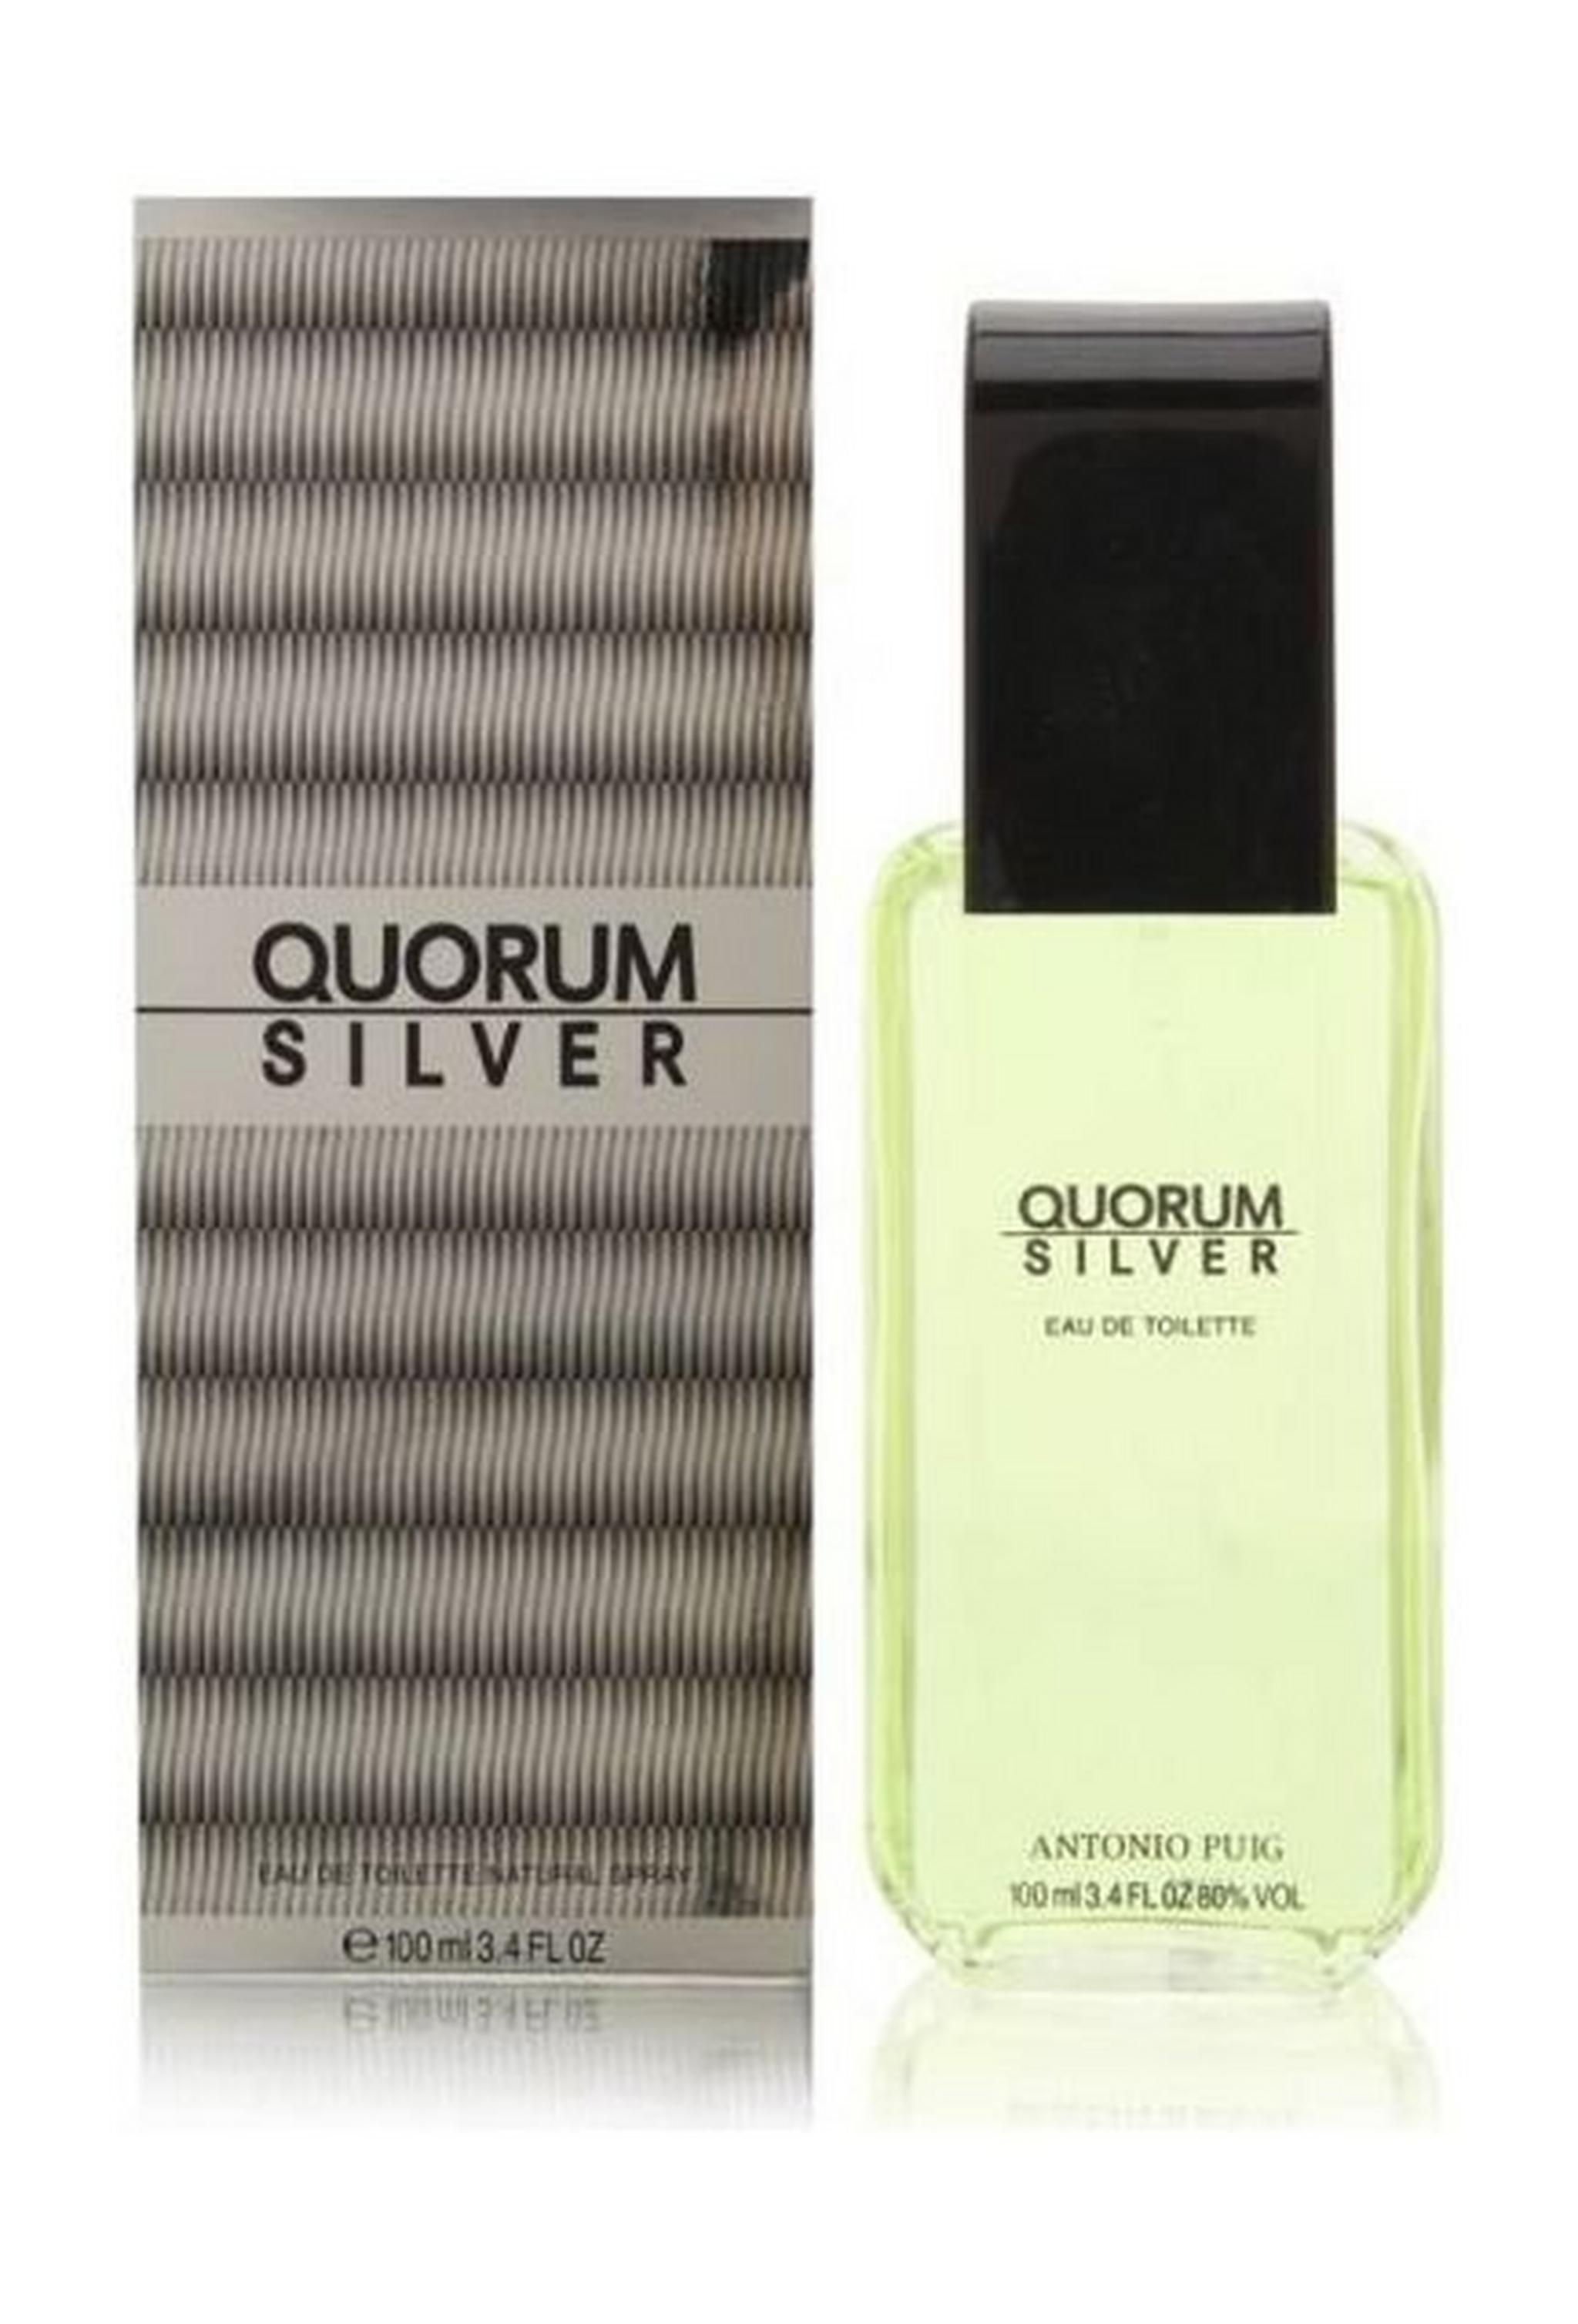 Quorum Silver 100ml Mens Perfume Eau de Toilette